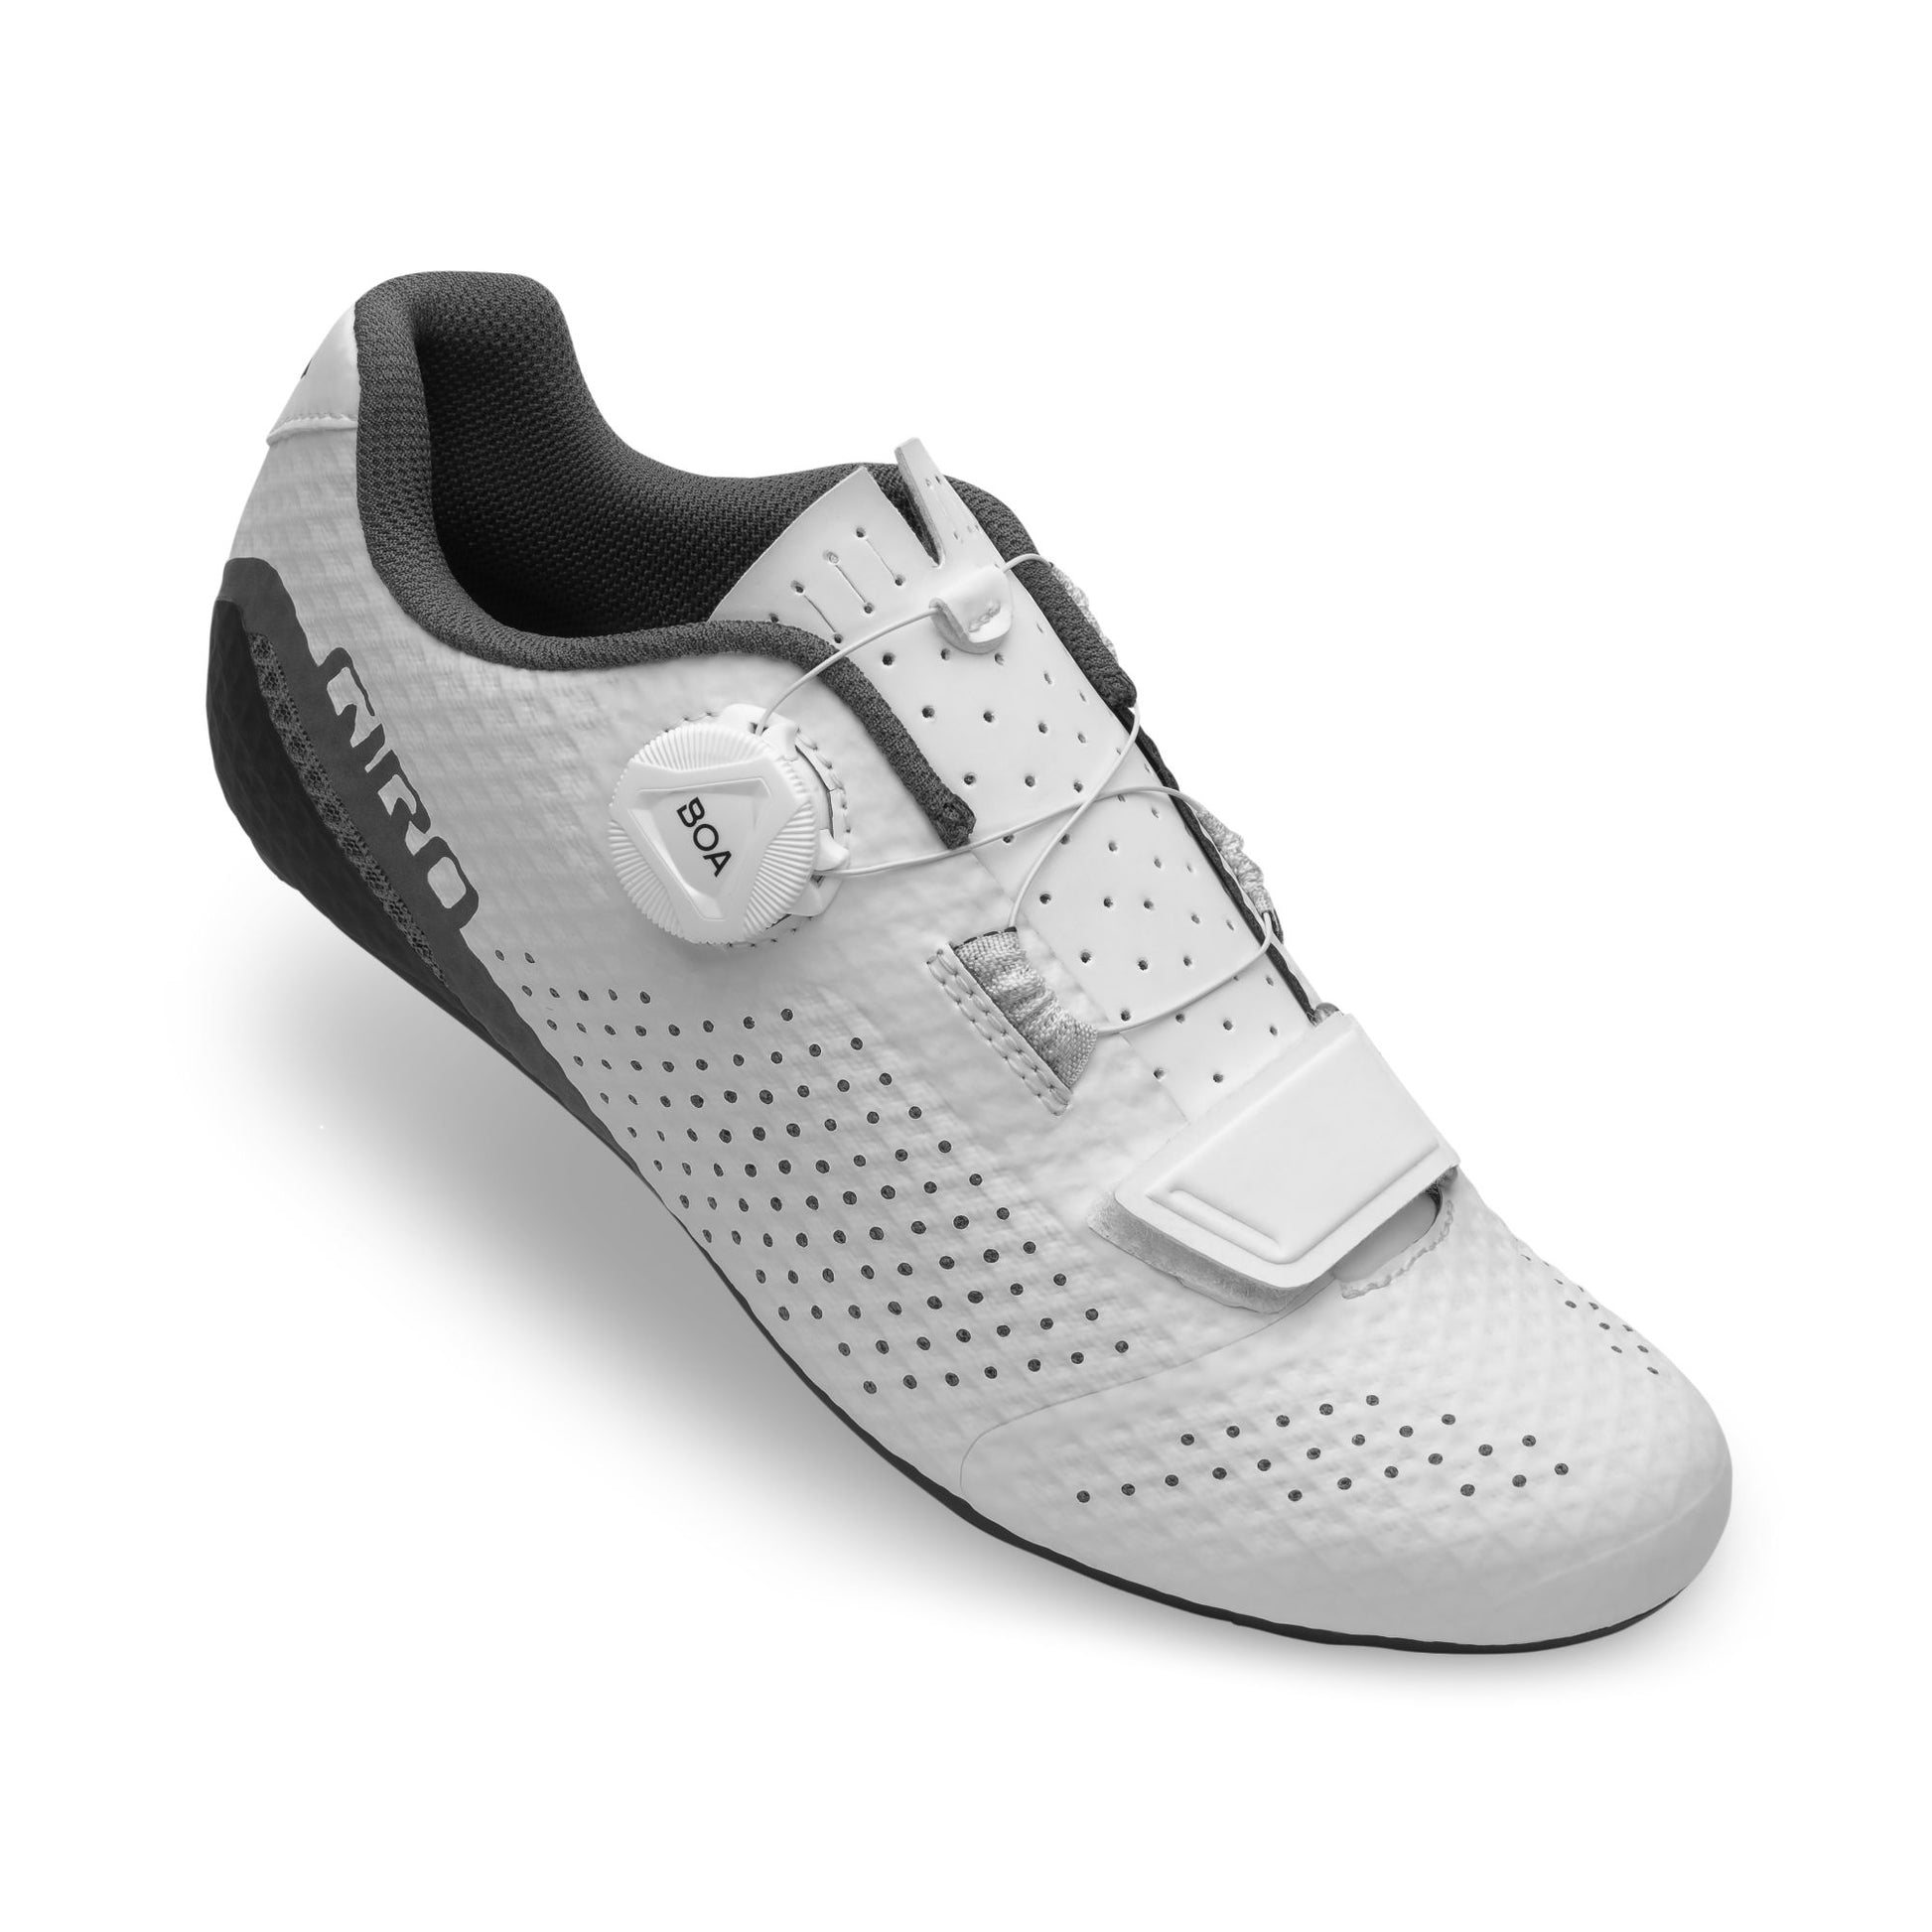 Giro Women's Cadet Shoe White Bike Shoes